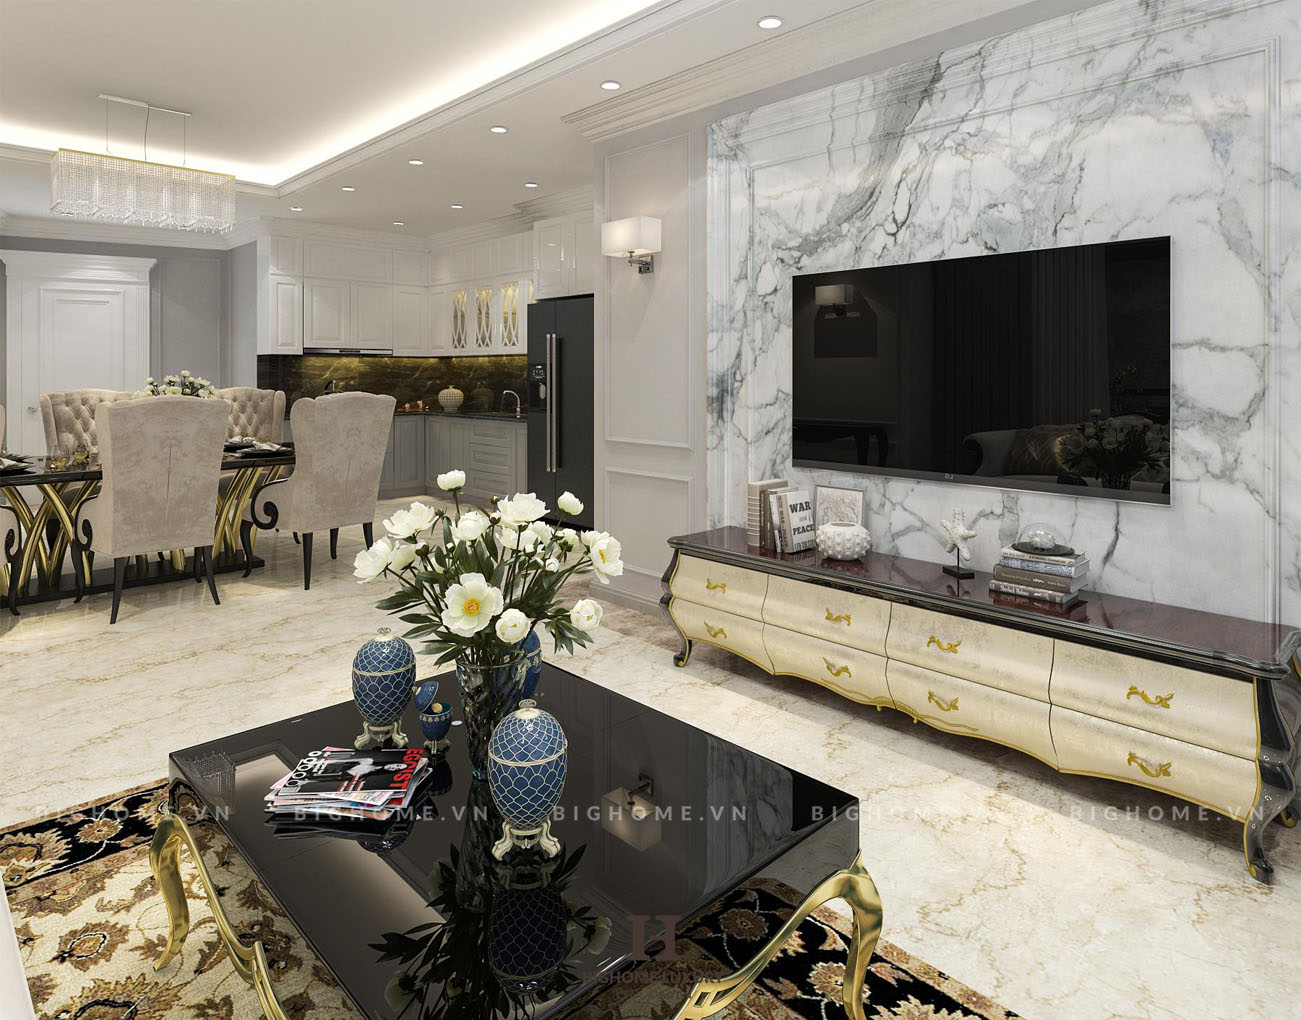 Chiêm ngưỡng thiết kế nội thất chung cư luxury nhà anh Đạt